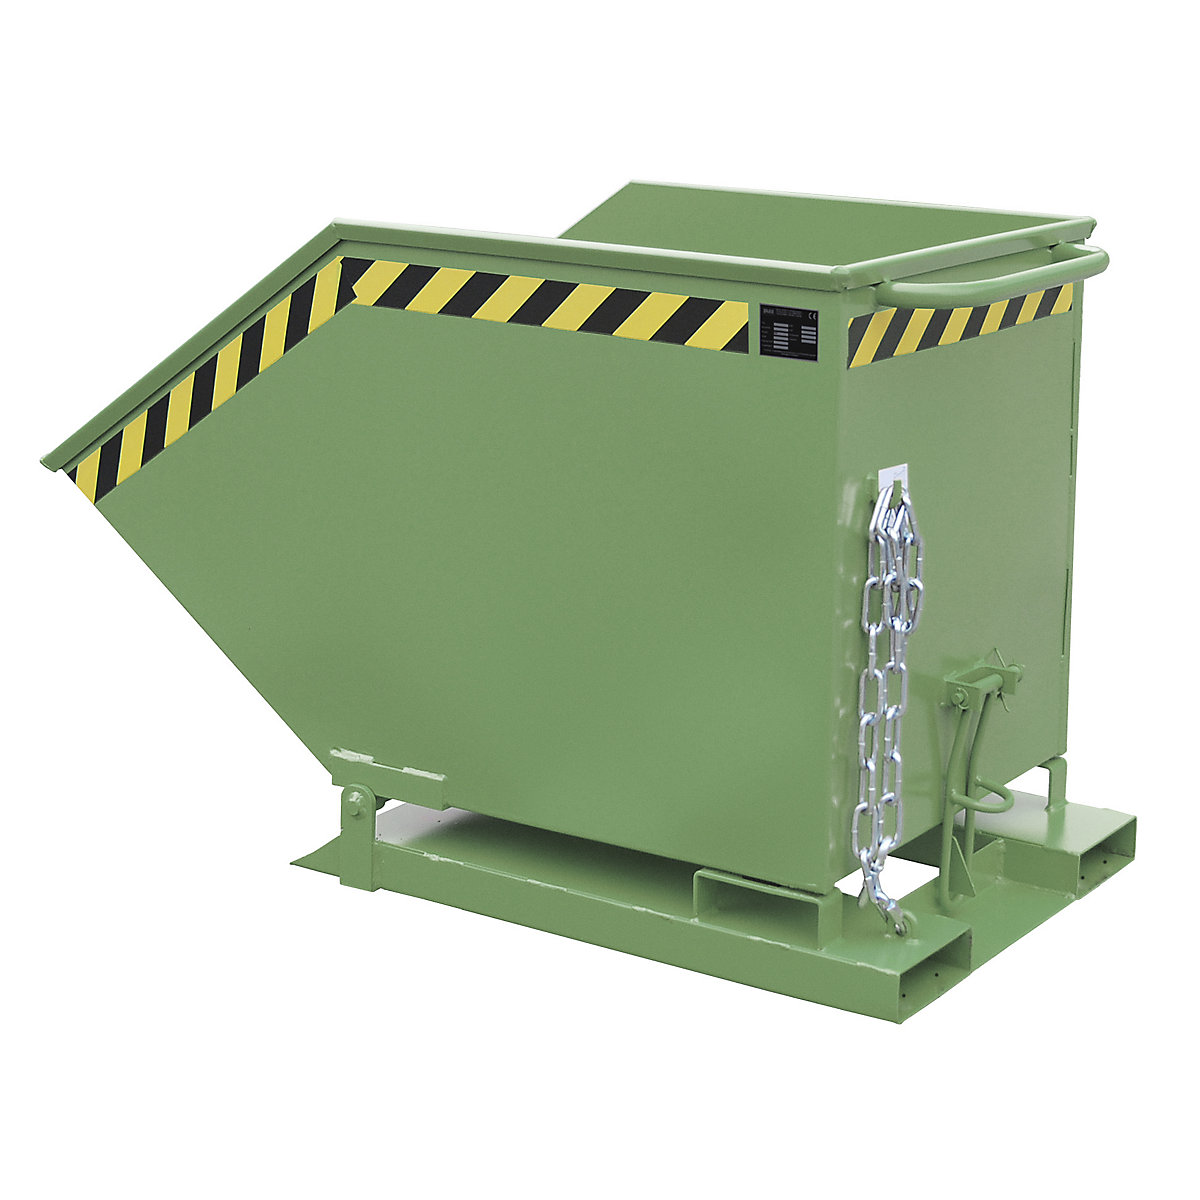 Pojemnik przechylny z mechanizmem składania – eurokraft pro, okrawędziowanie skrzynkowe, poj. 0,6 m³, zielony, RAL 6011-7